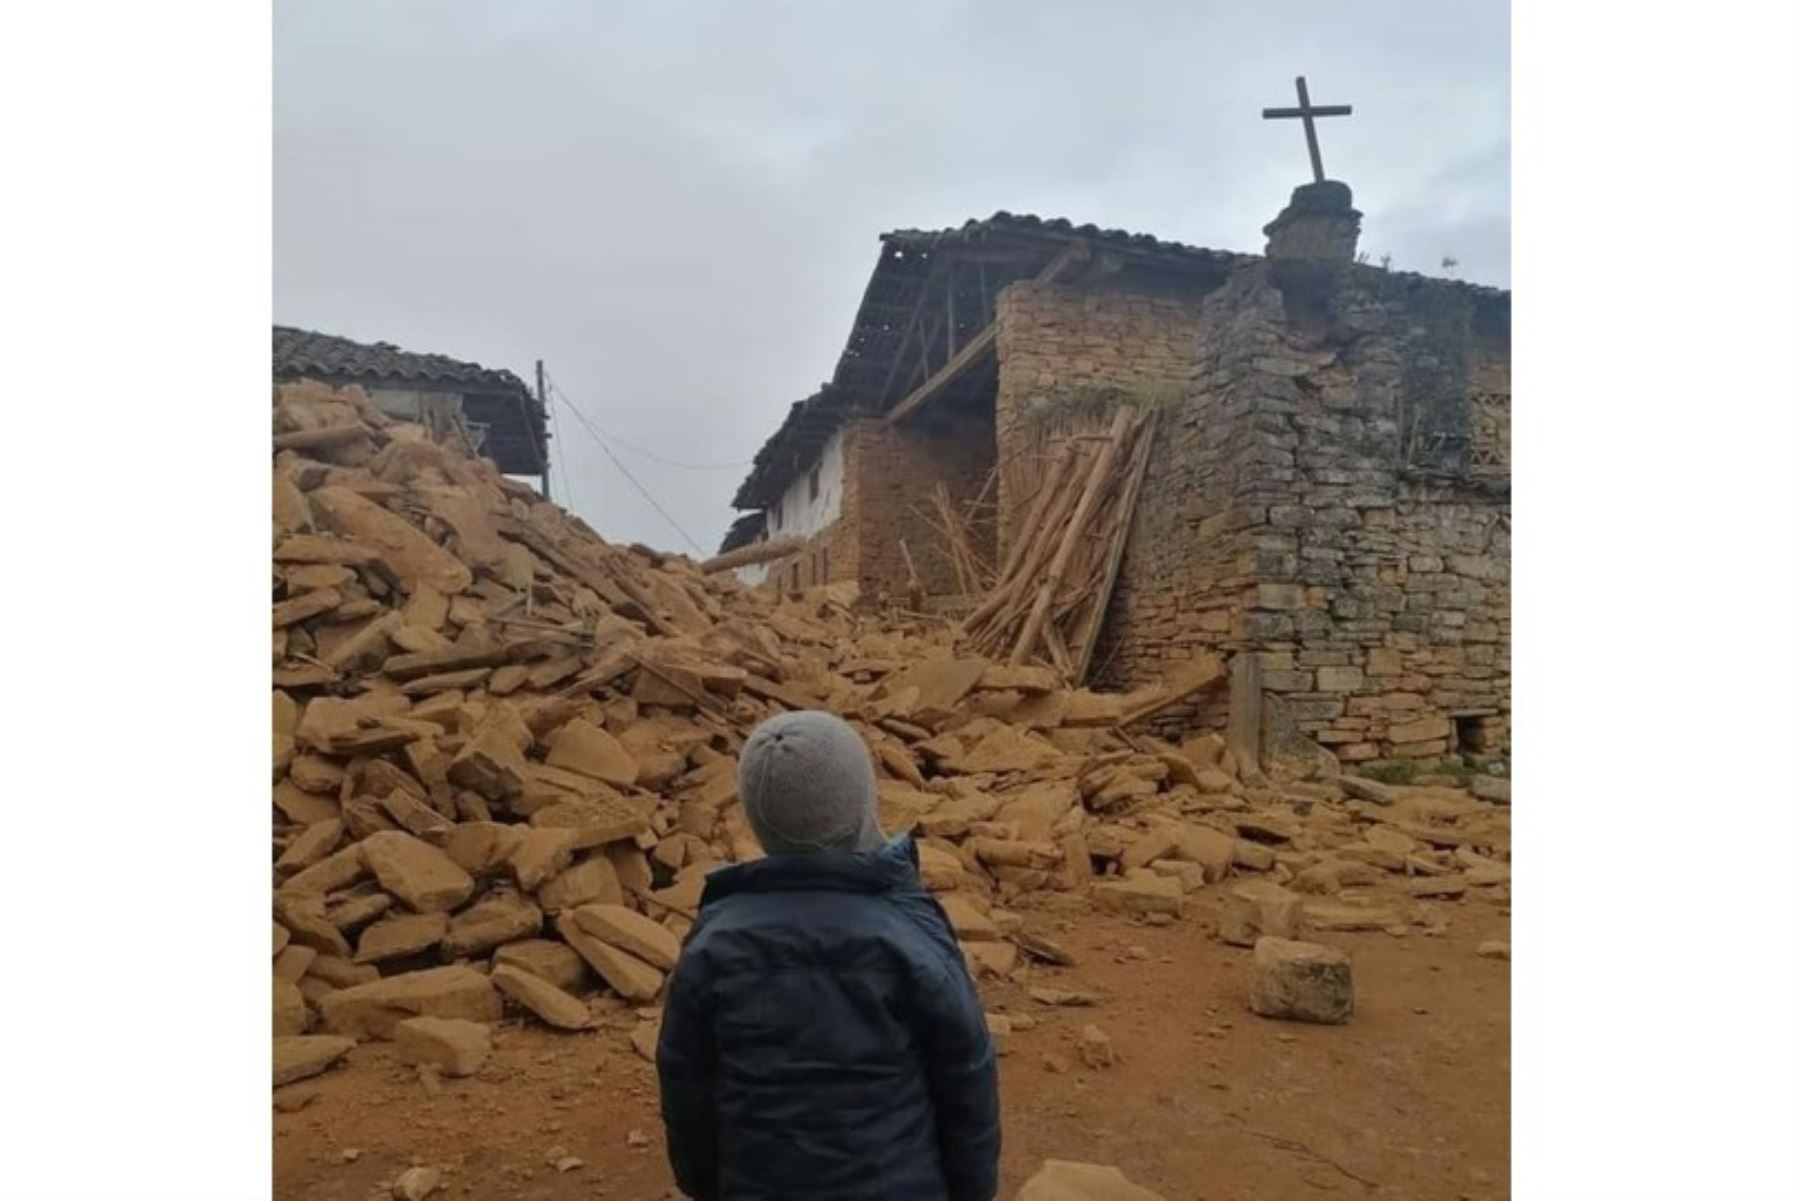 El fuerte sismo de magnitud 7.5 registrado cerca de Santa María de Nieva, en Amazonas, causó el derrumbe de la torre de la iglesia Jalca Grande. Foto: Amazonas Noticias/Facebook